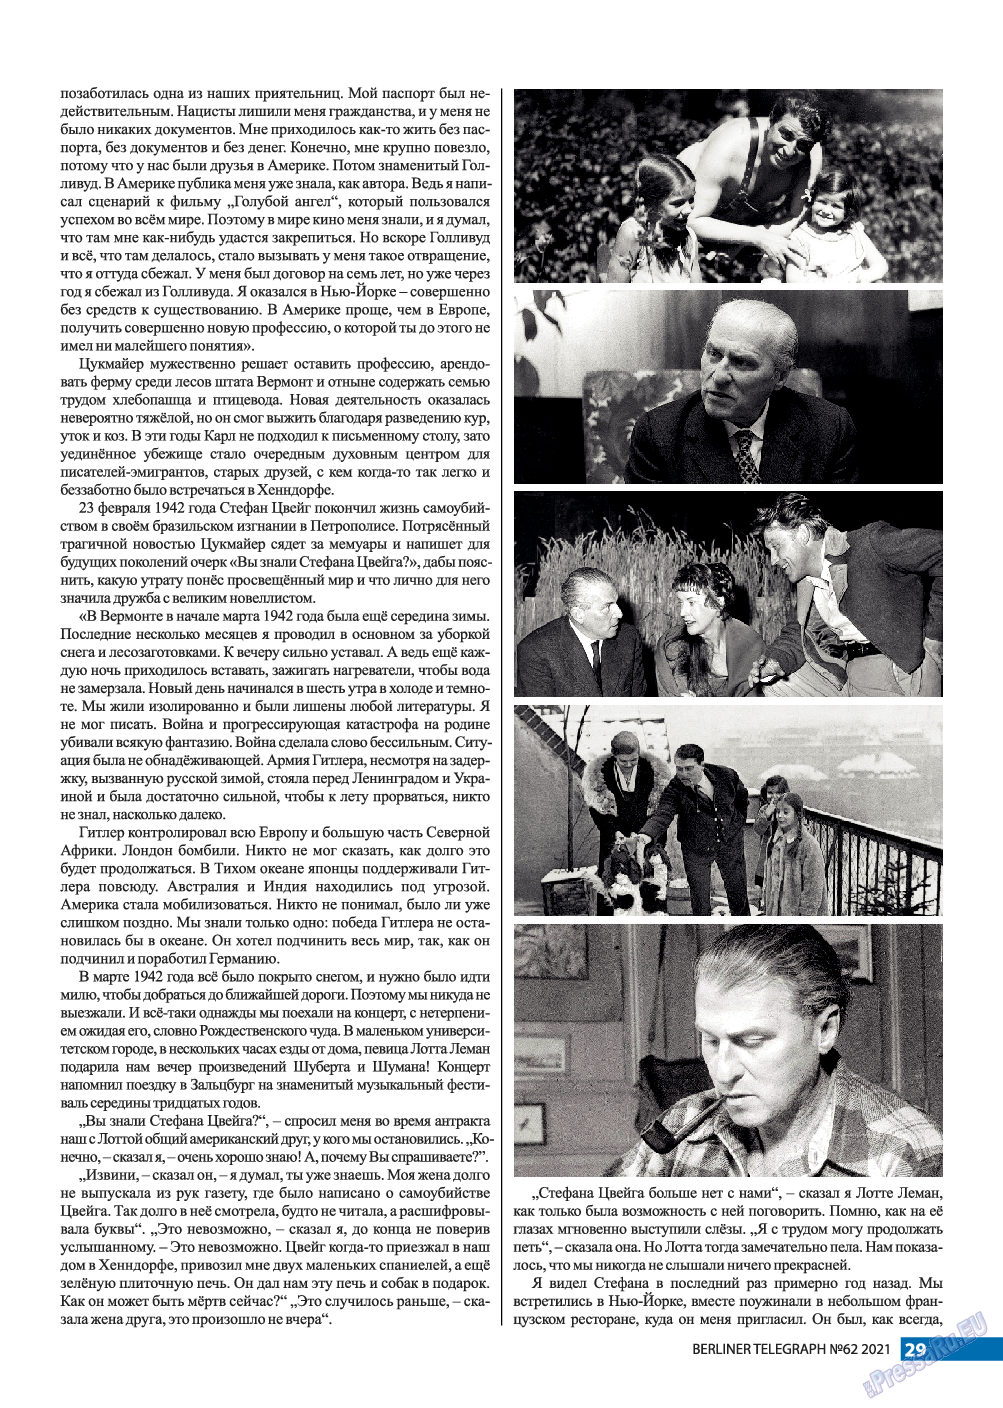 Берлинский телеграф, журнал. 2021 №62 стр.29